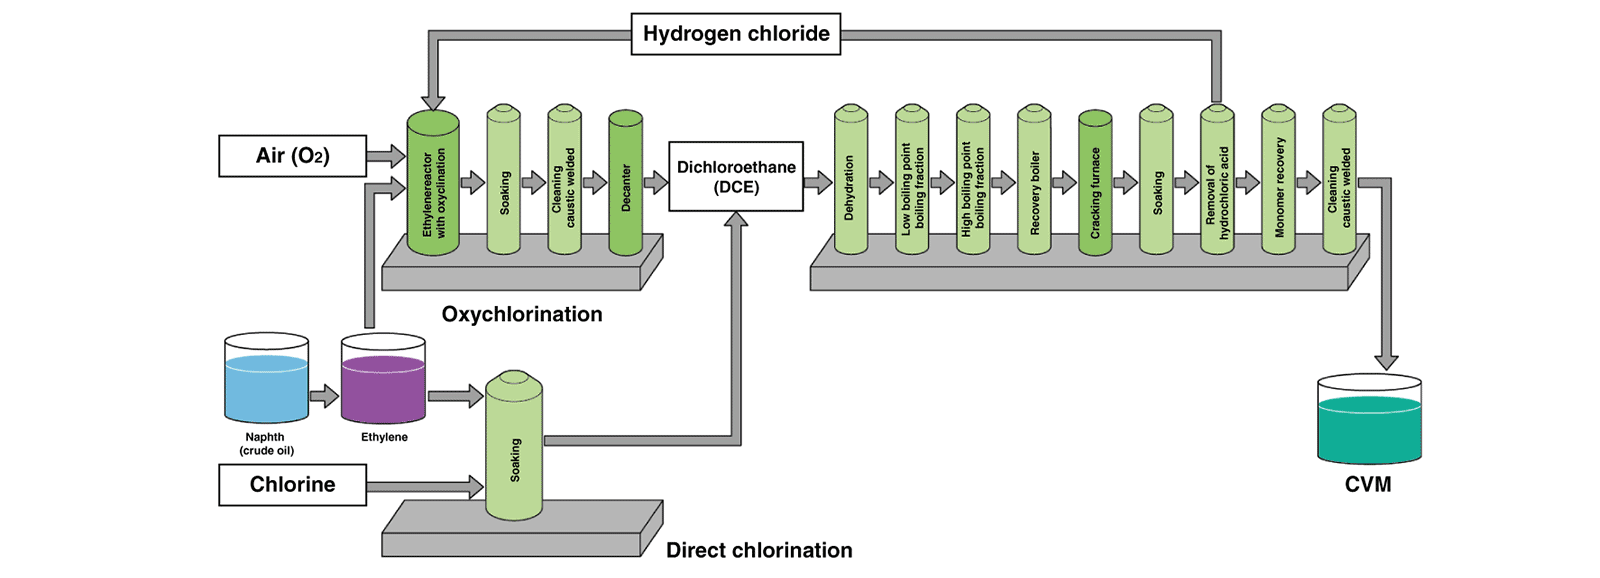 Produção de cloreto de vinilo monómero cvm